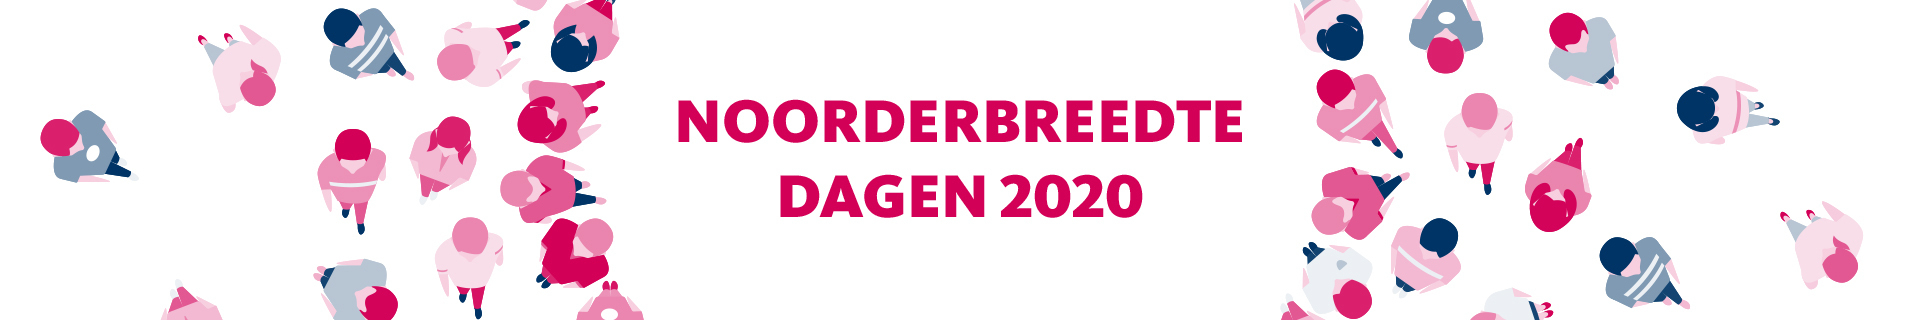 Noorderbreedte-dagen 2021